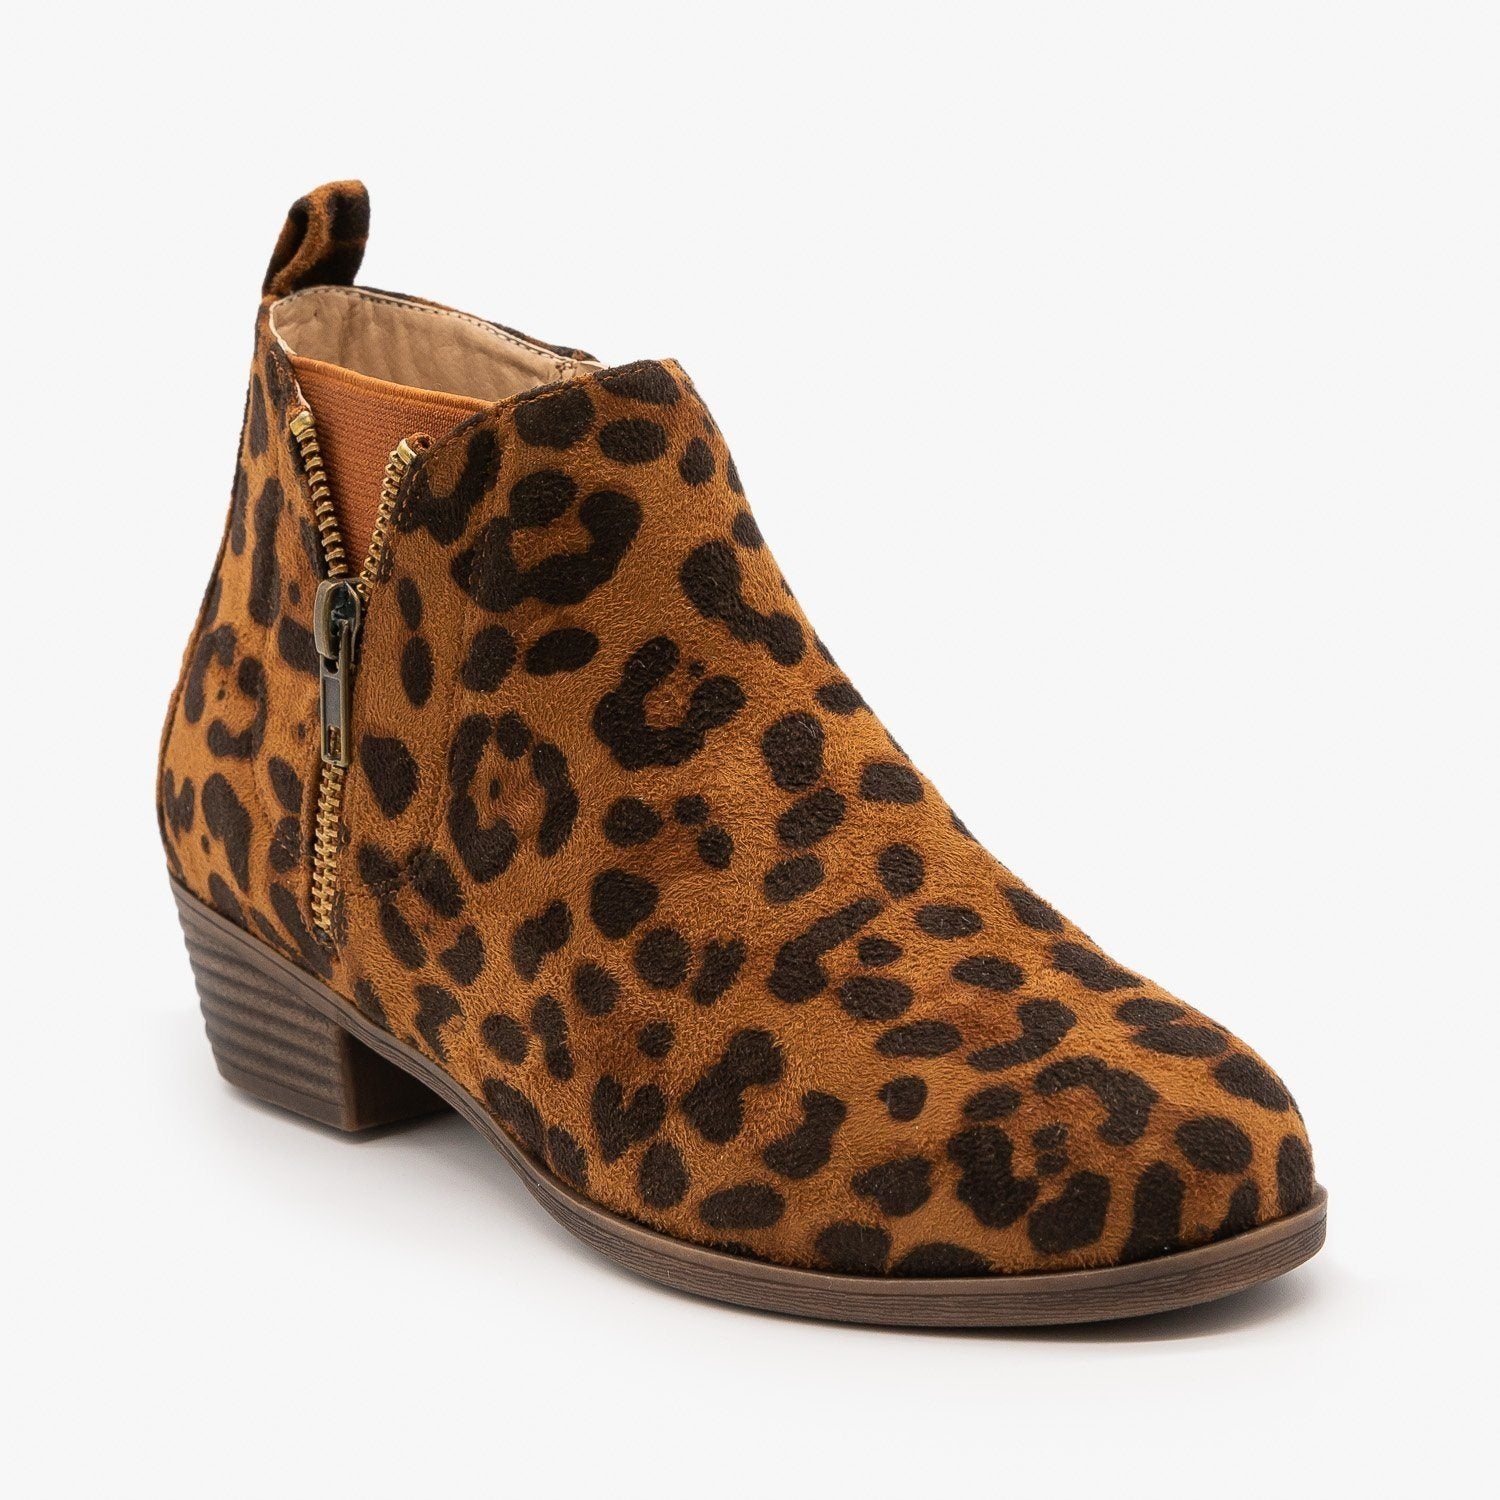 leopard print block heel booties